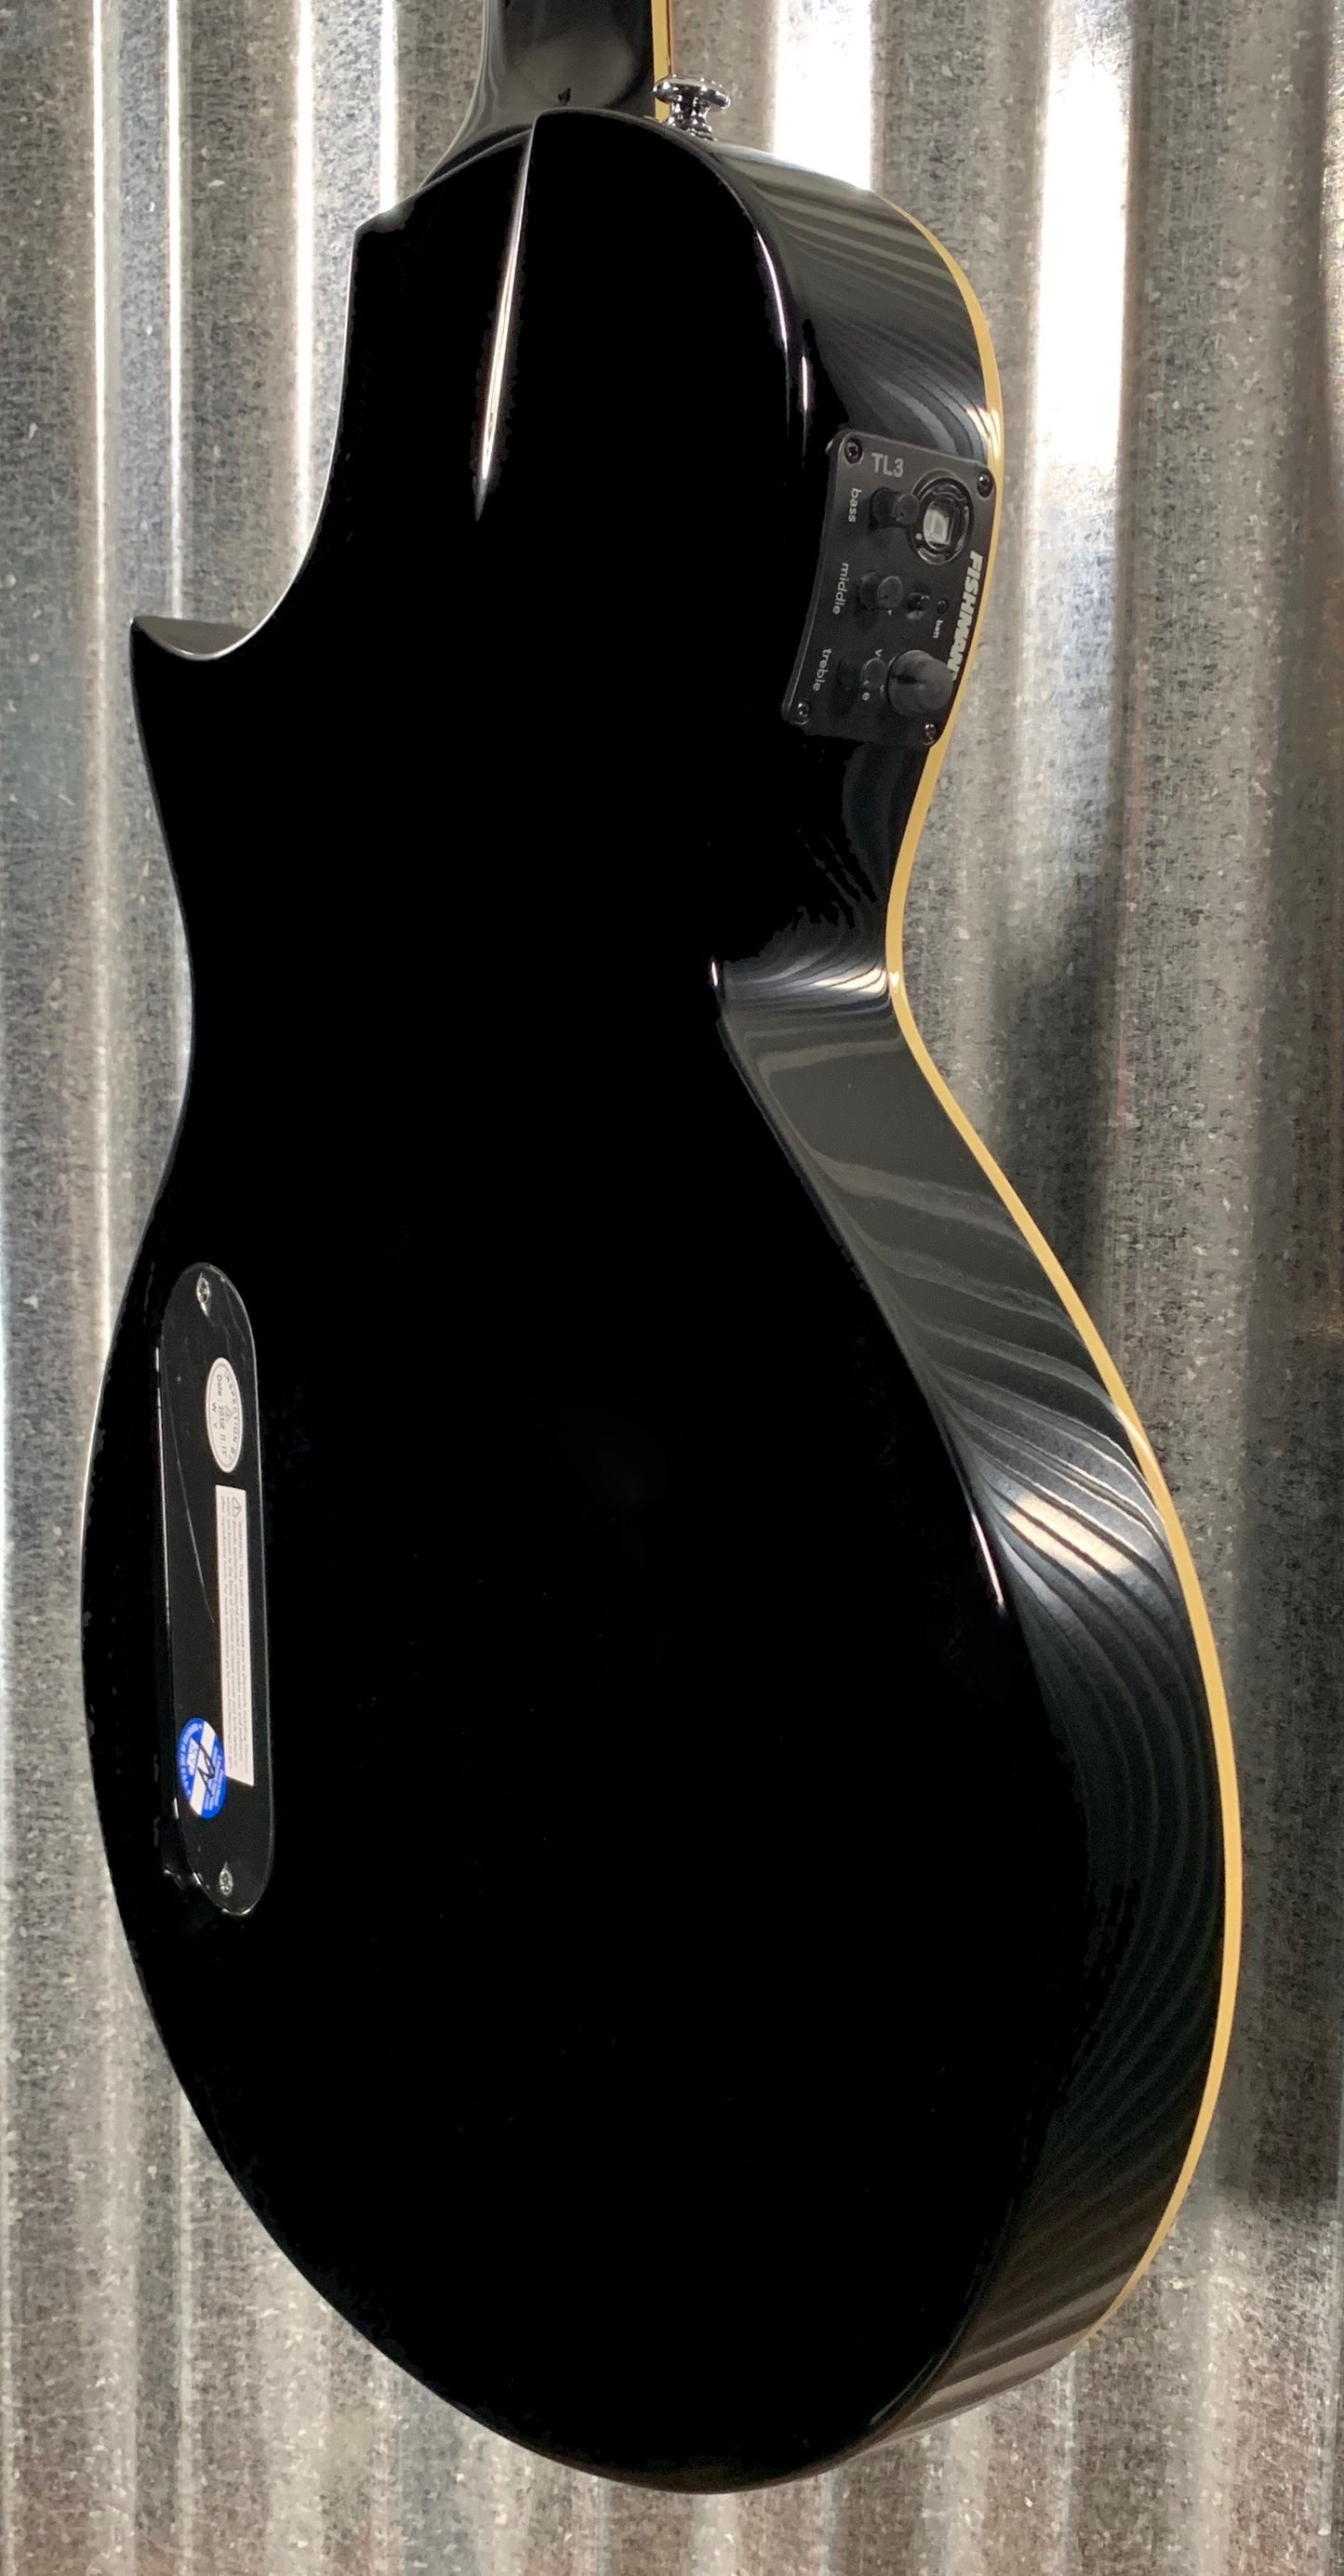 ESP LTD TL-6 Black Thin Acoustic Electric Guitar Guitar & Case LTL6BLK #1860